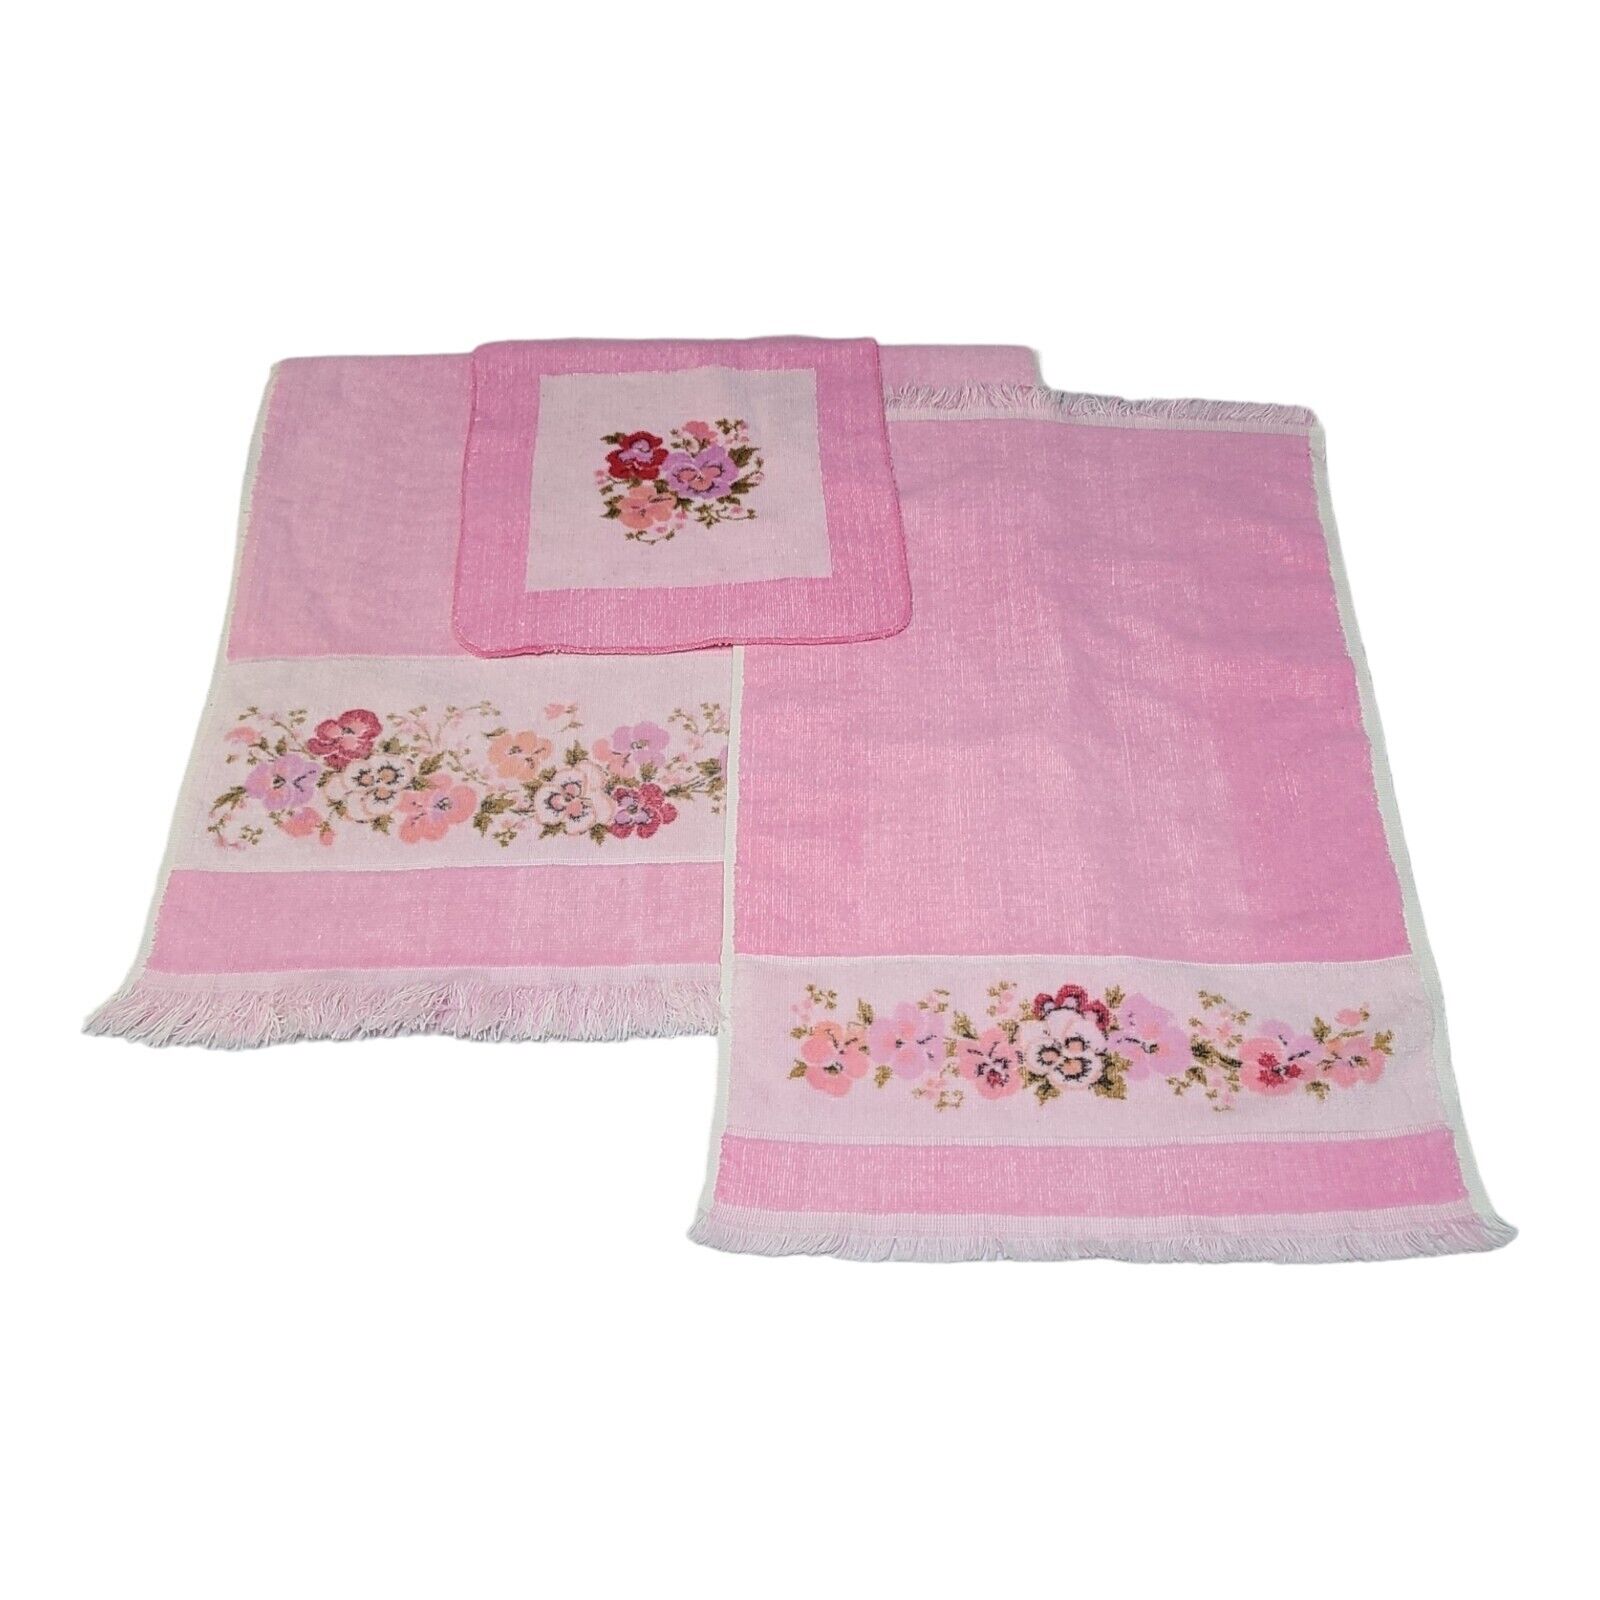 Vintage 3 Piece Towel Set JCPenney Pink Pansy Fringe Floral Bath Hamd Washcloth